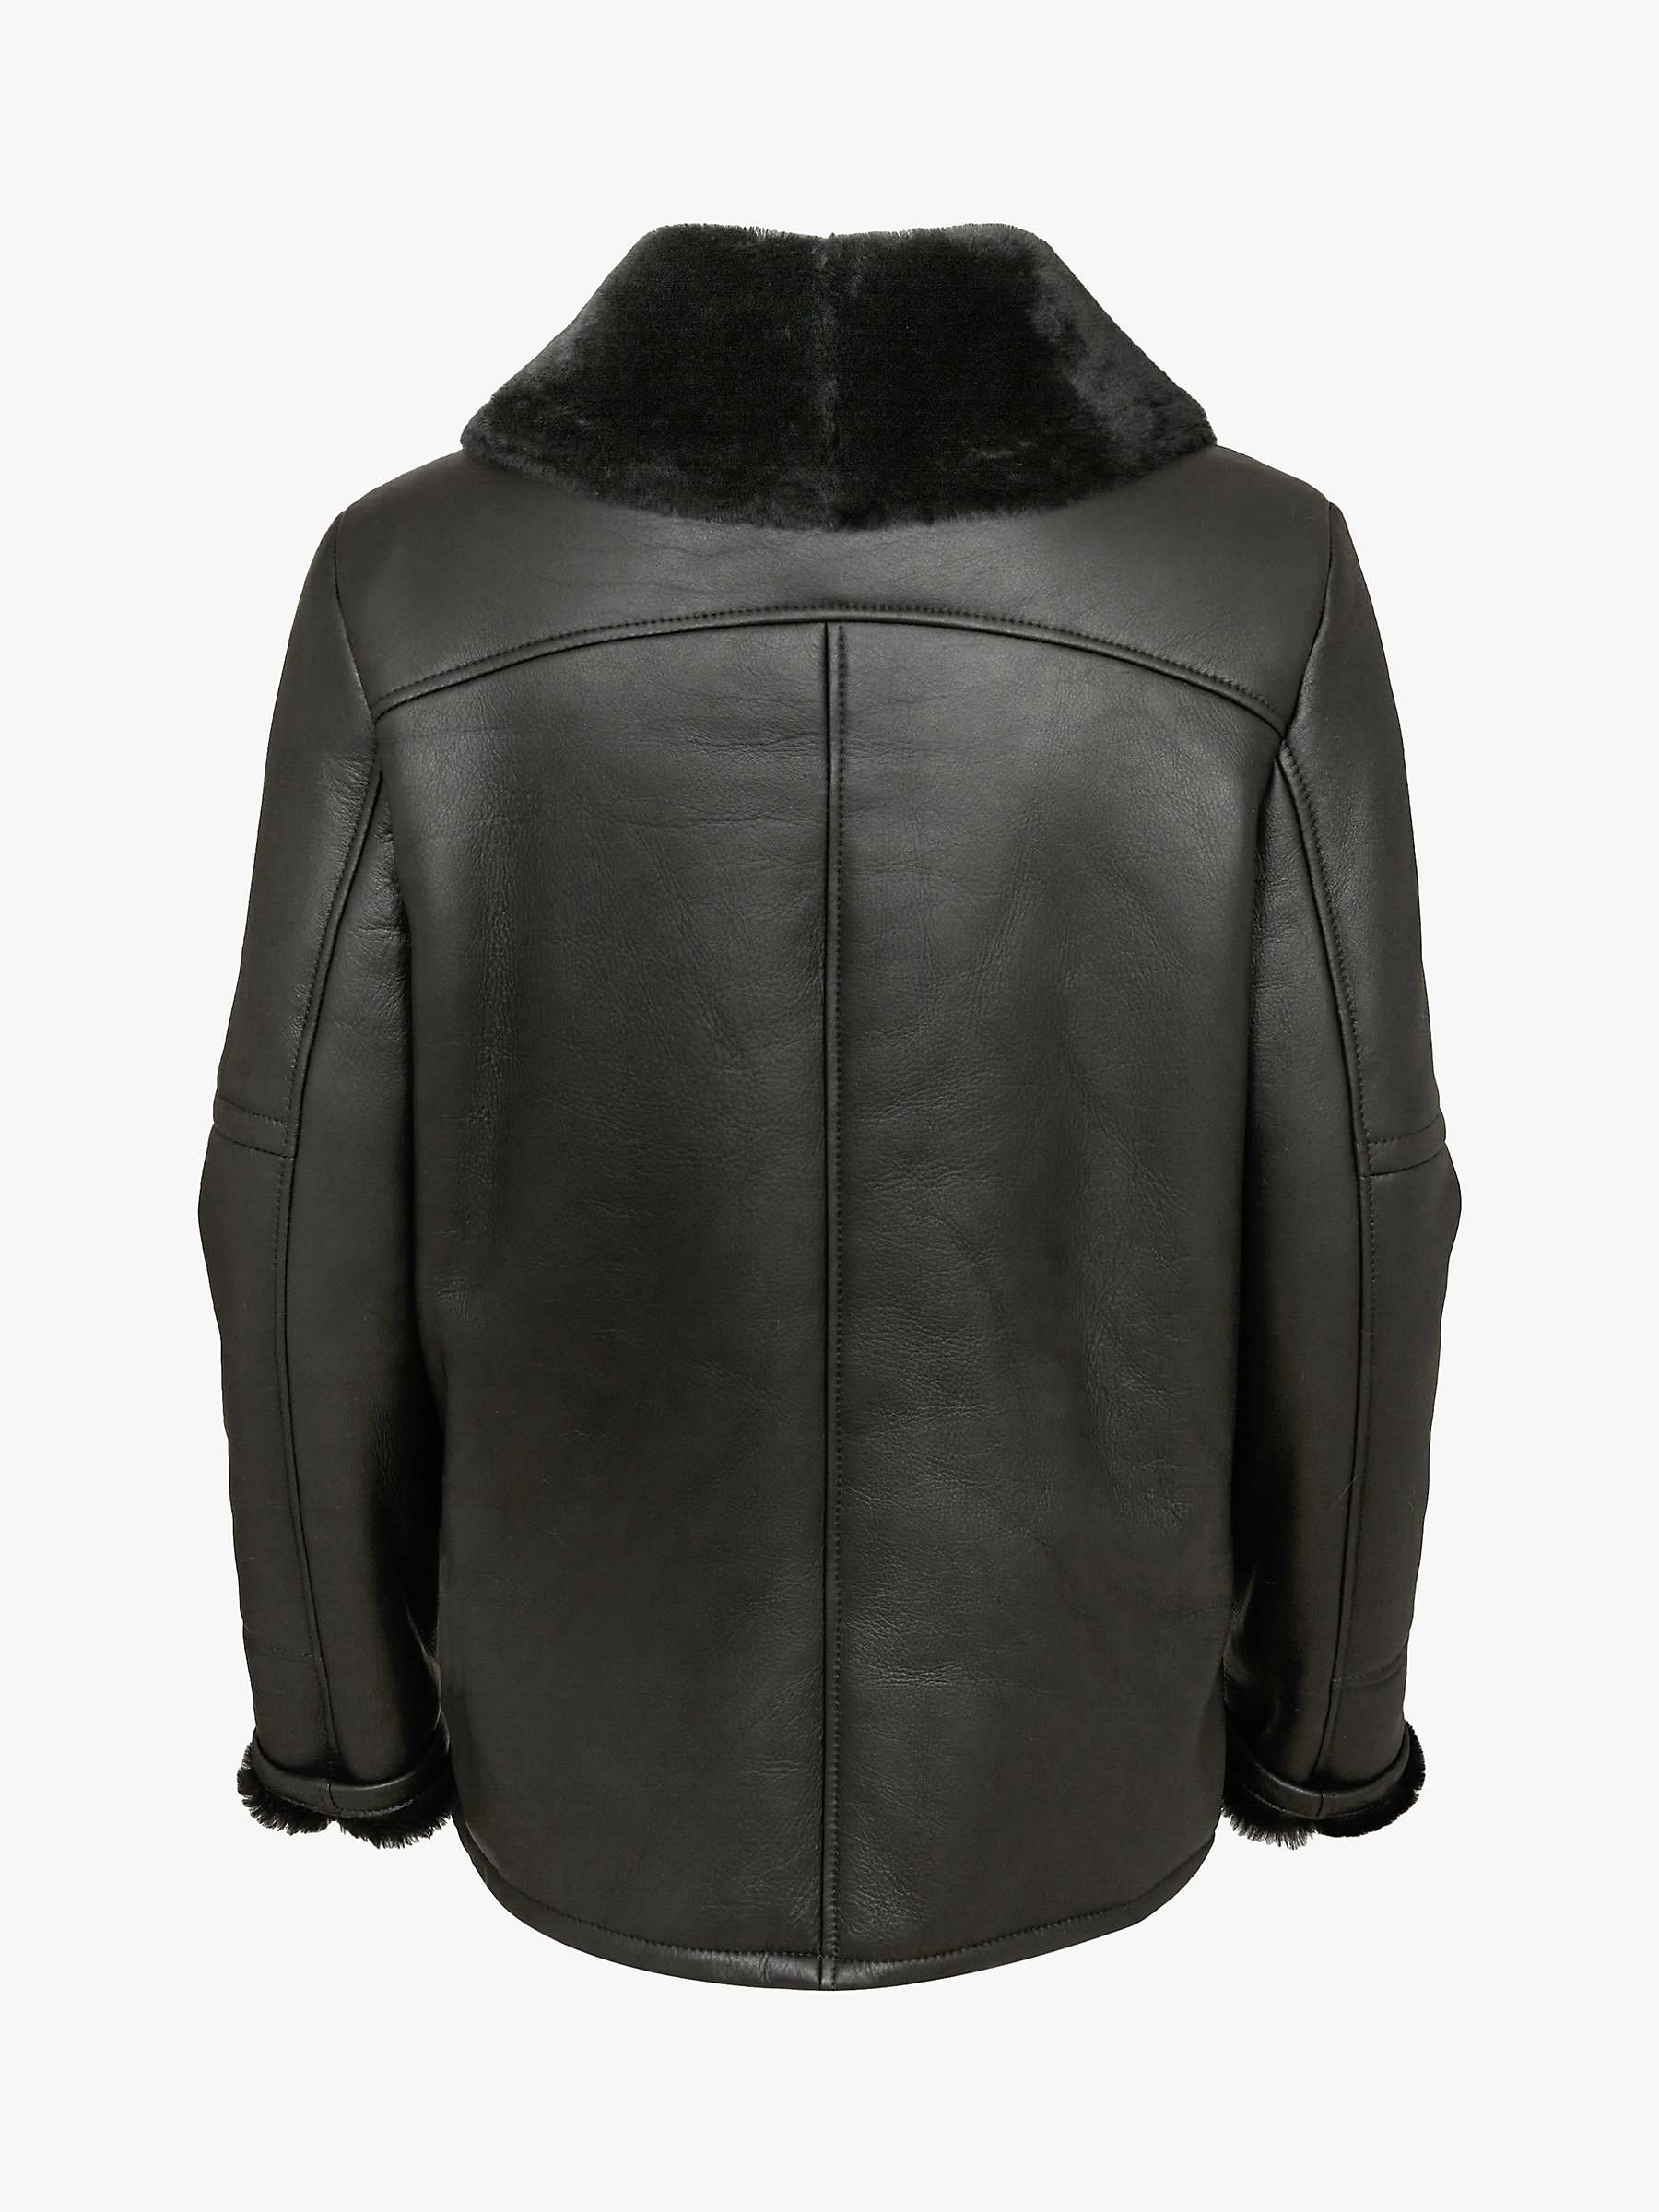 Buy Celtic & Co. Leather Aviator Jacket Online at johnlewis.com